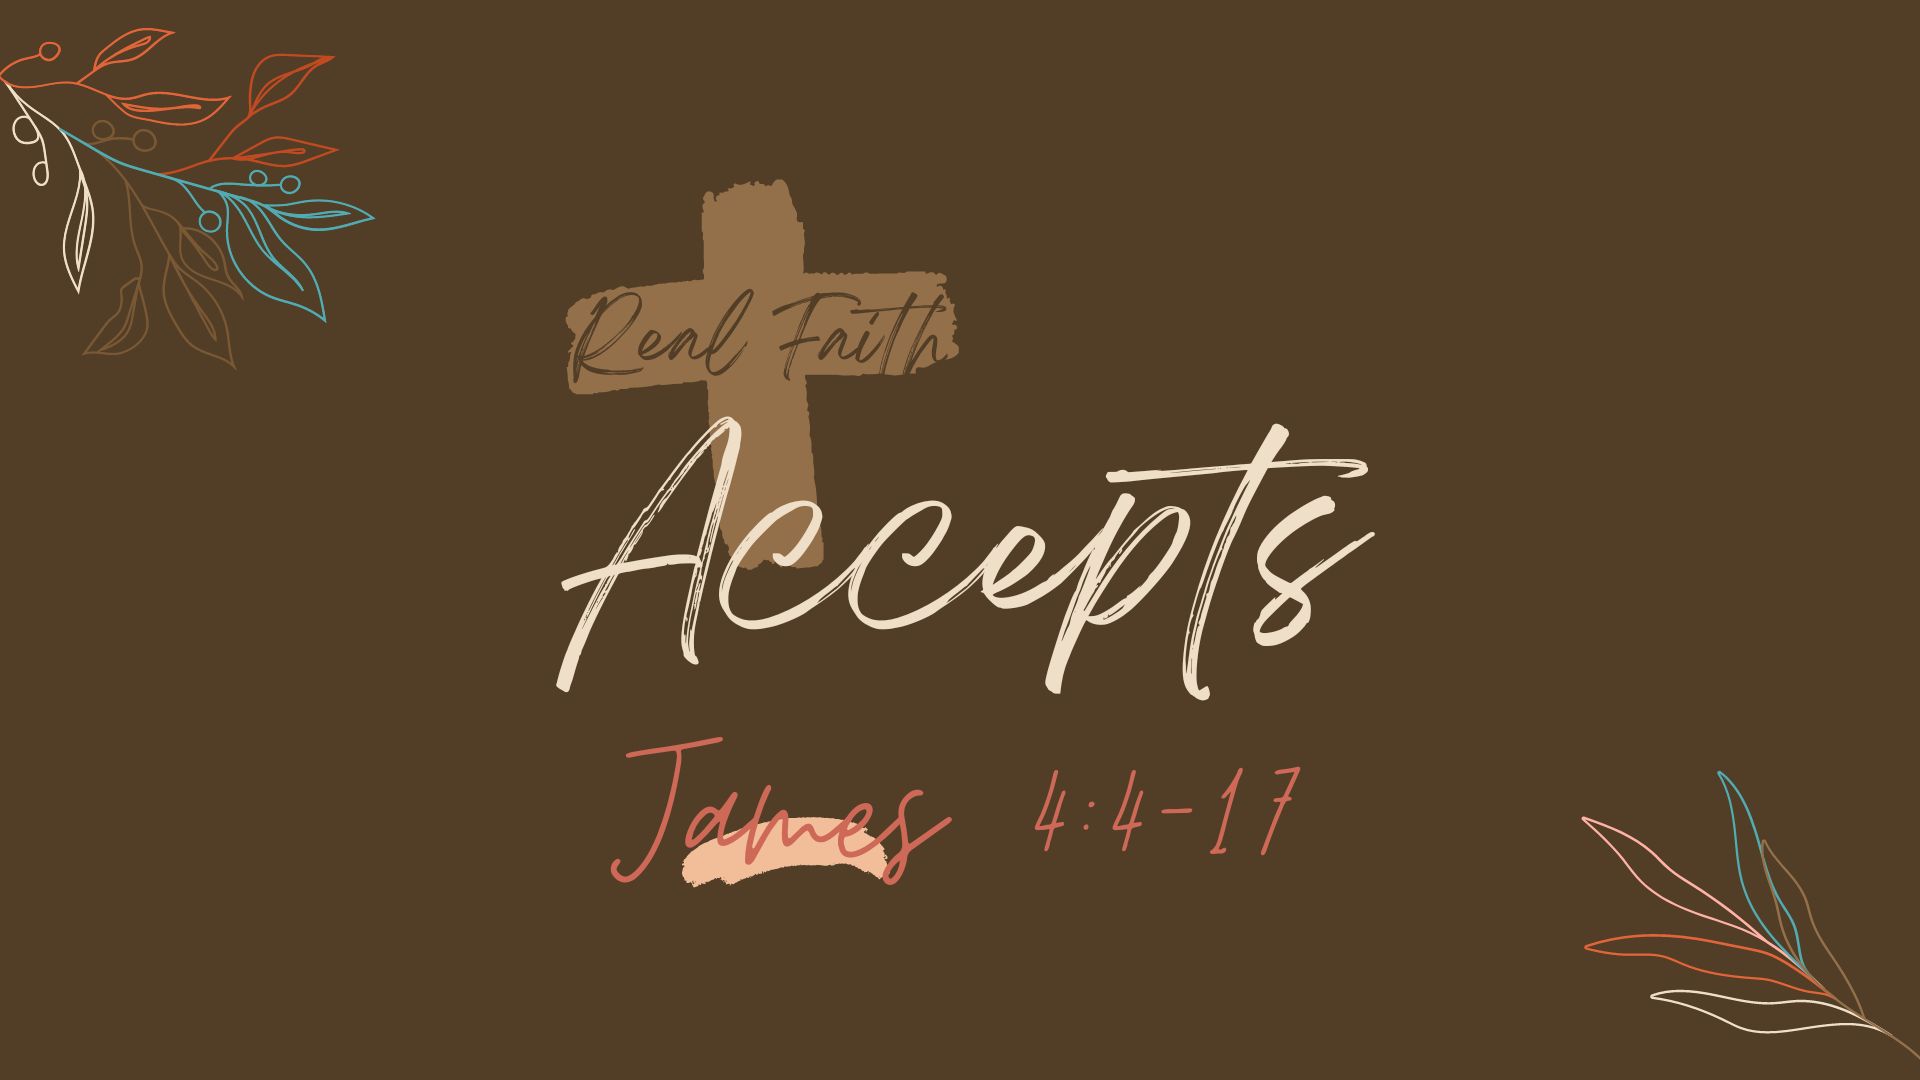 Real Faith 9 - Accepts